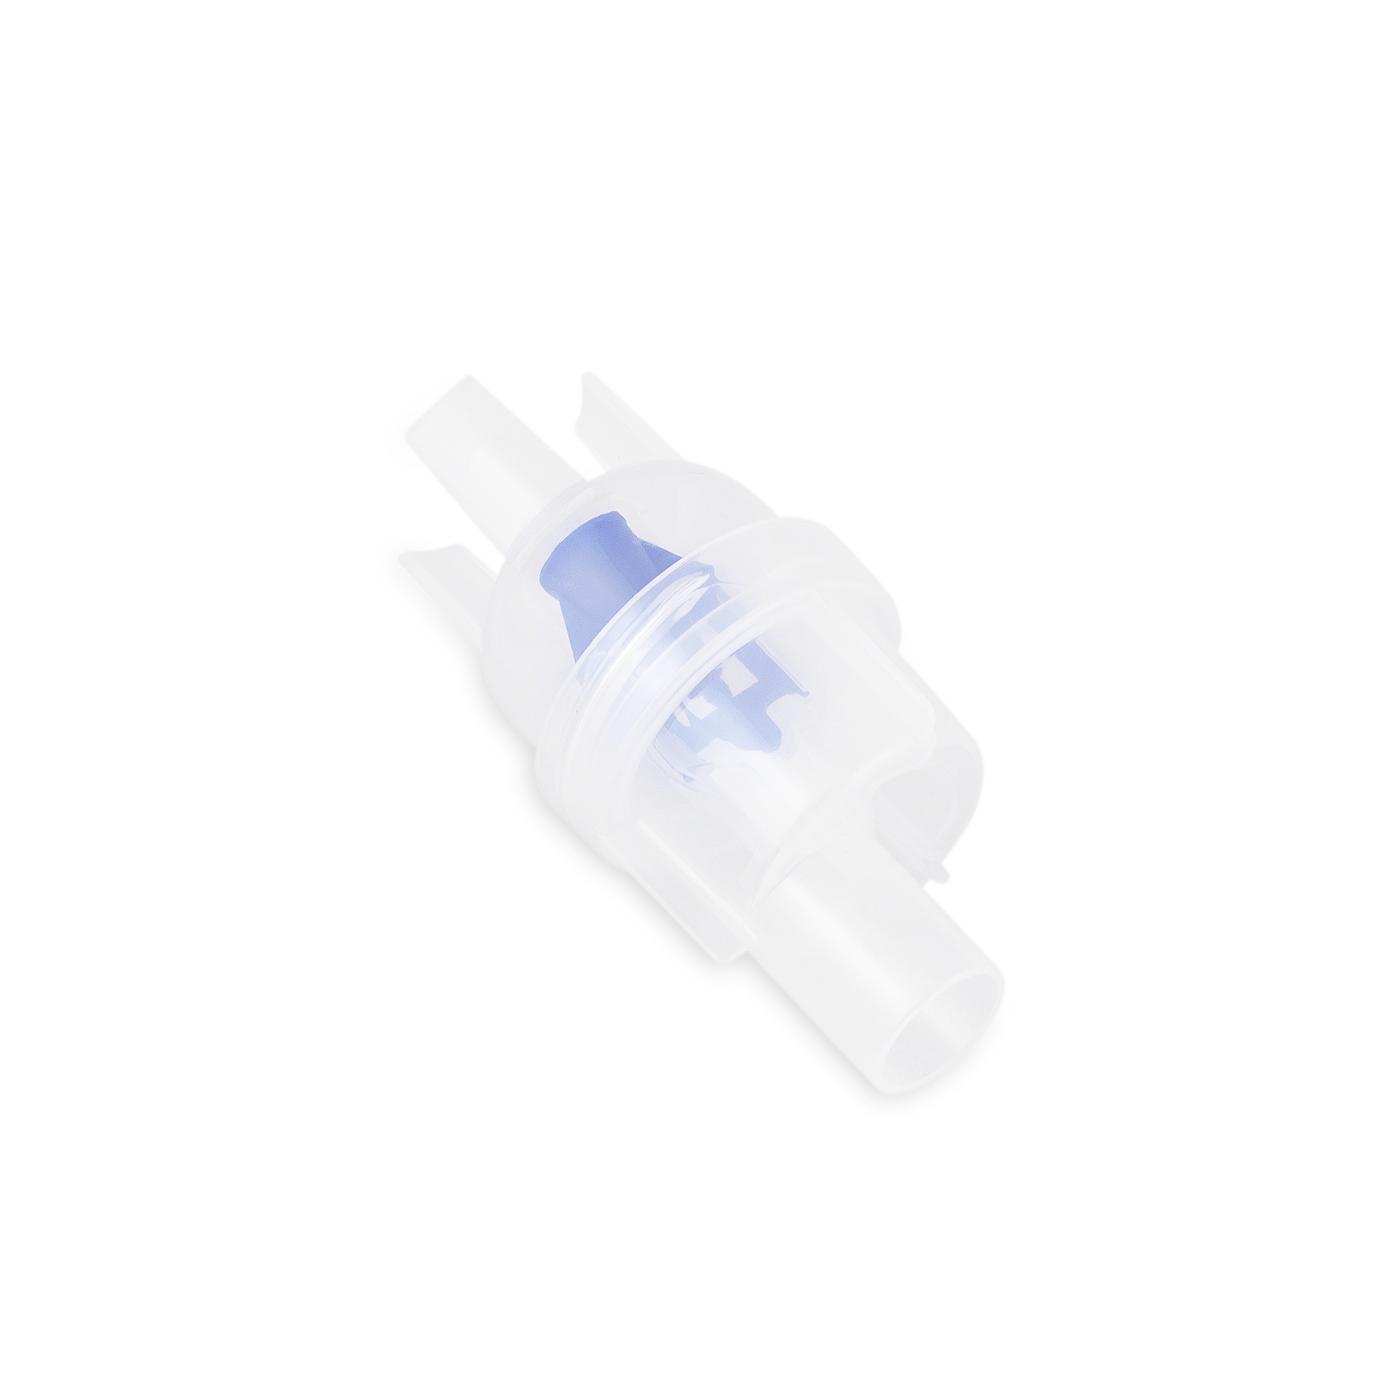 Nebulizator do inhalatora (NEB 200, NEB 400)